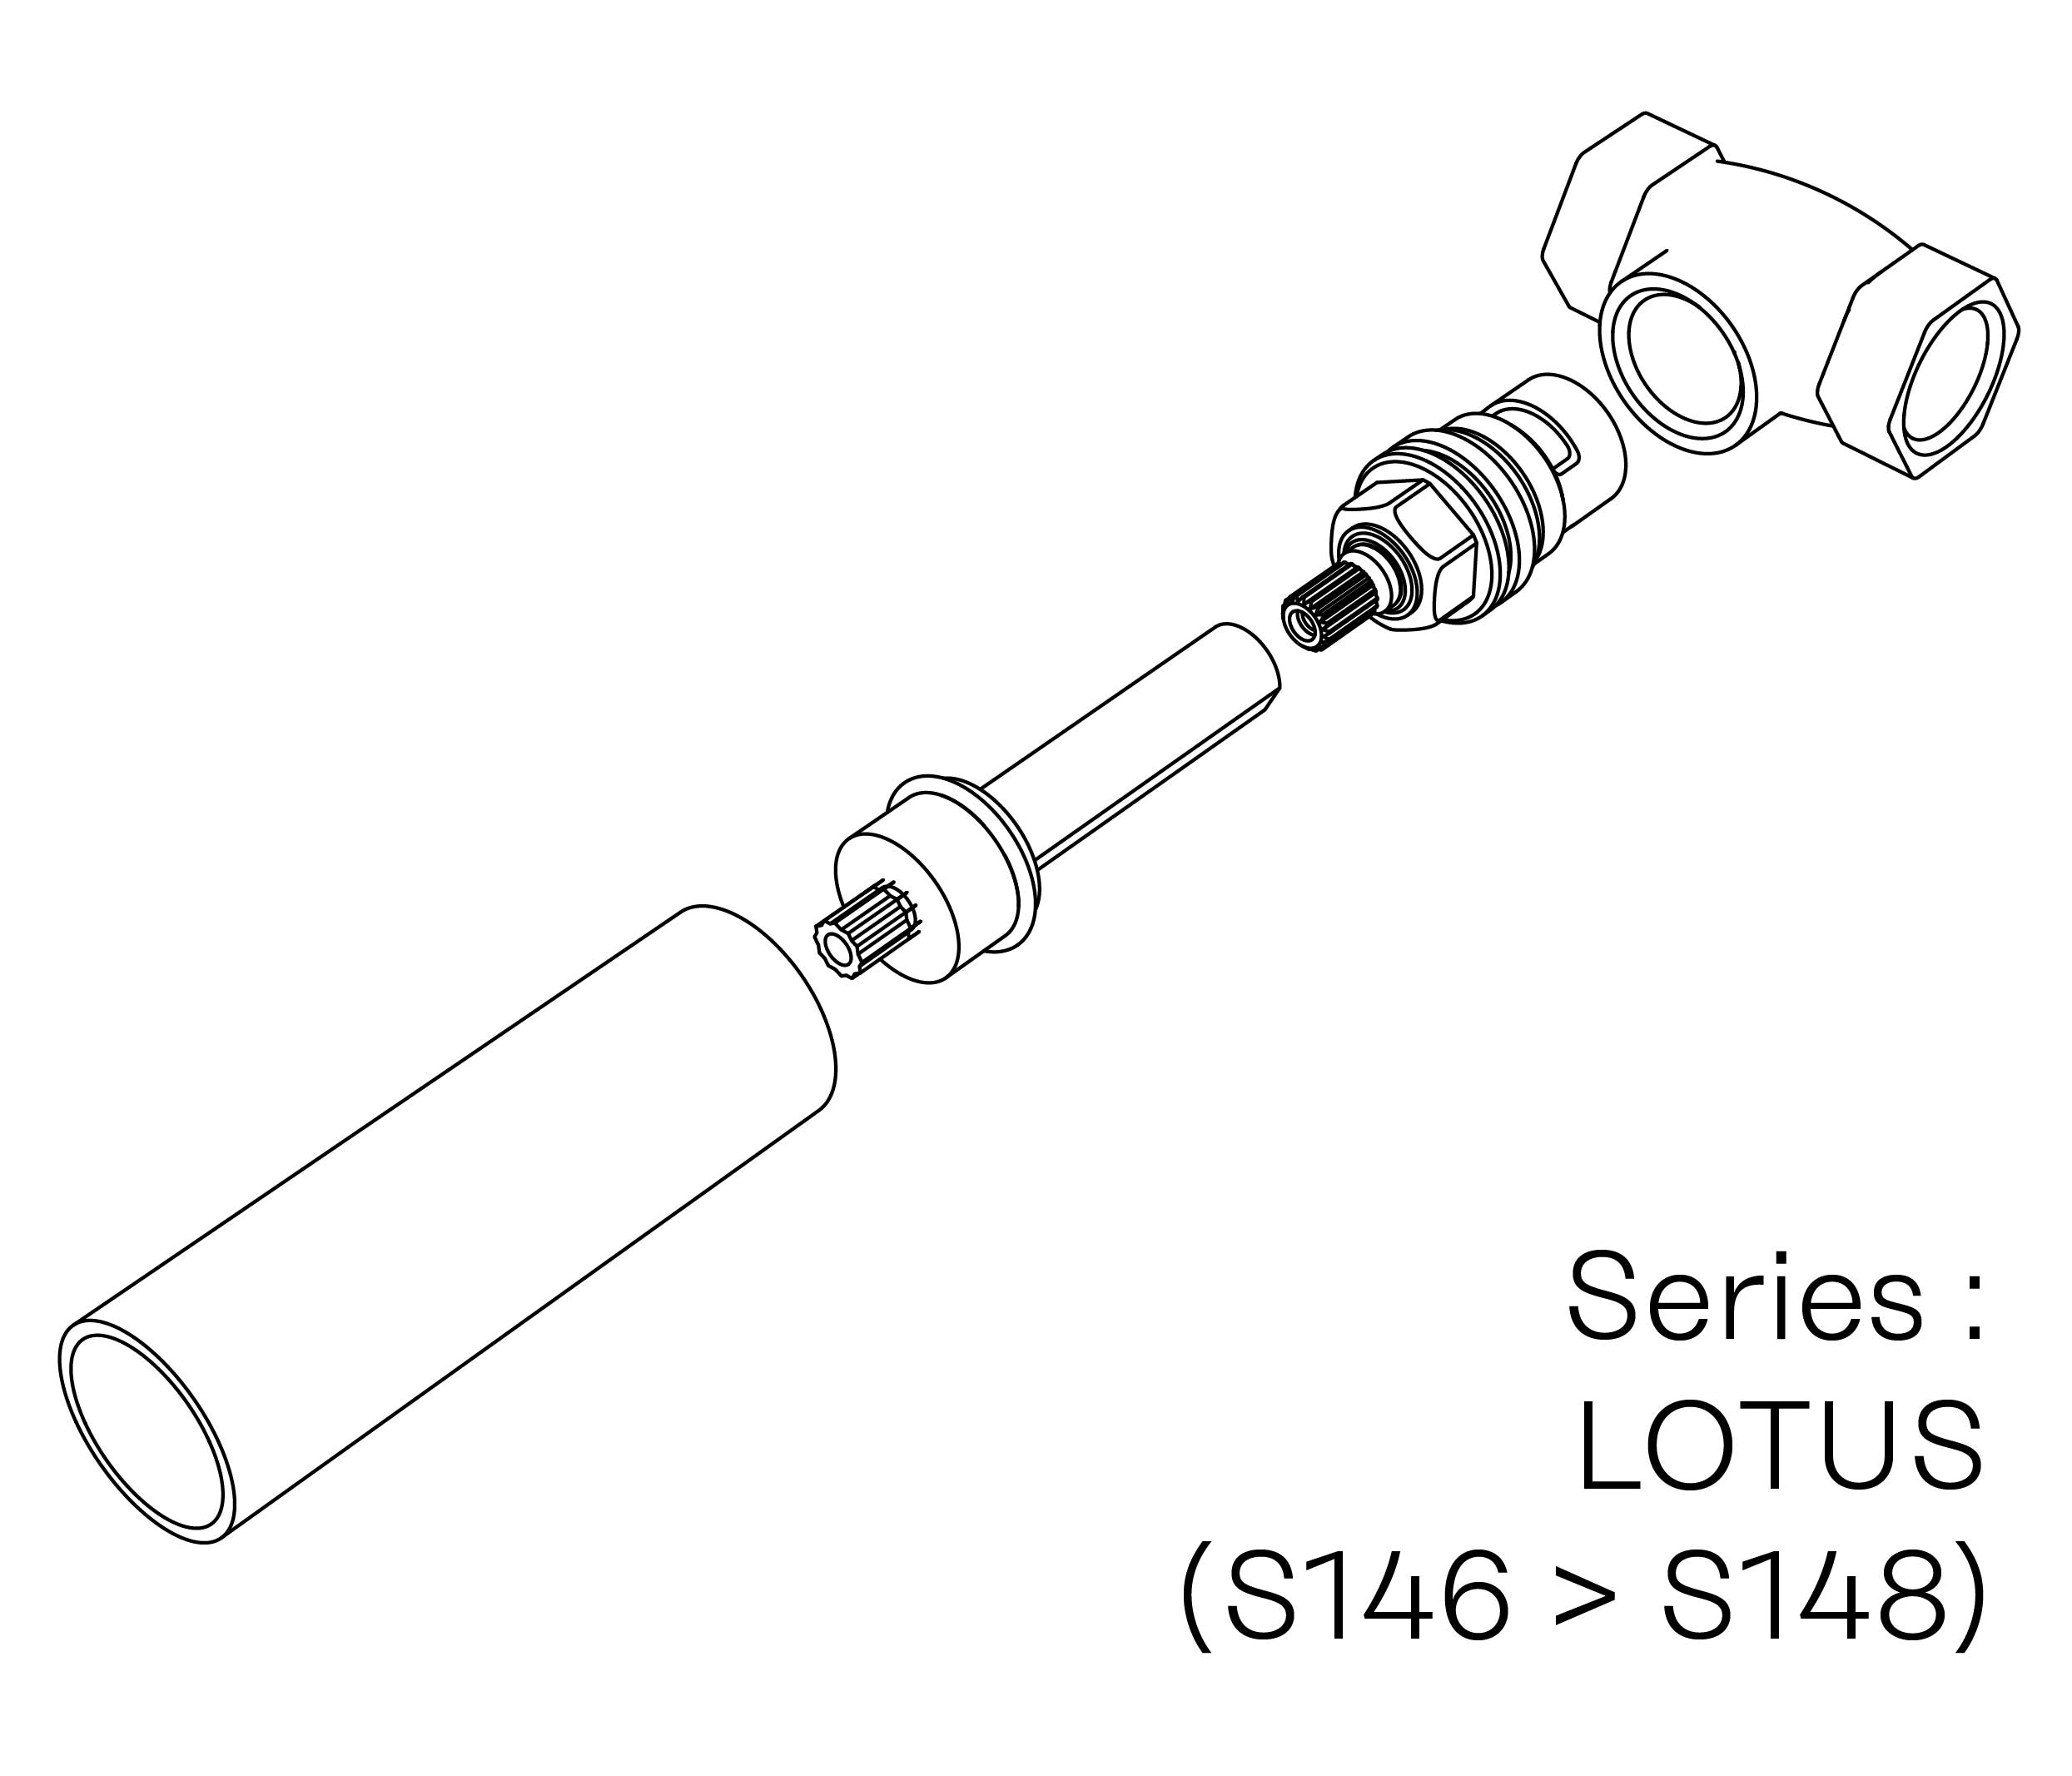 S00-27K28C Kit #7 for W-M valve 1/2″, 1/4 turn, Right